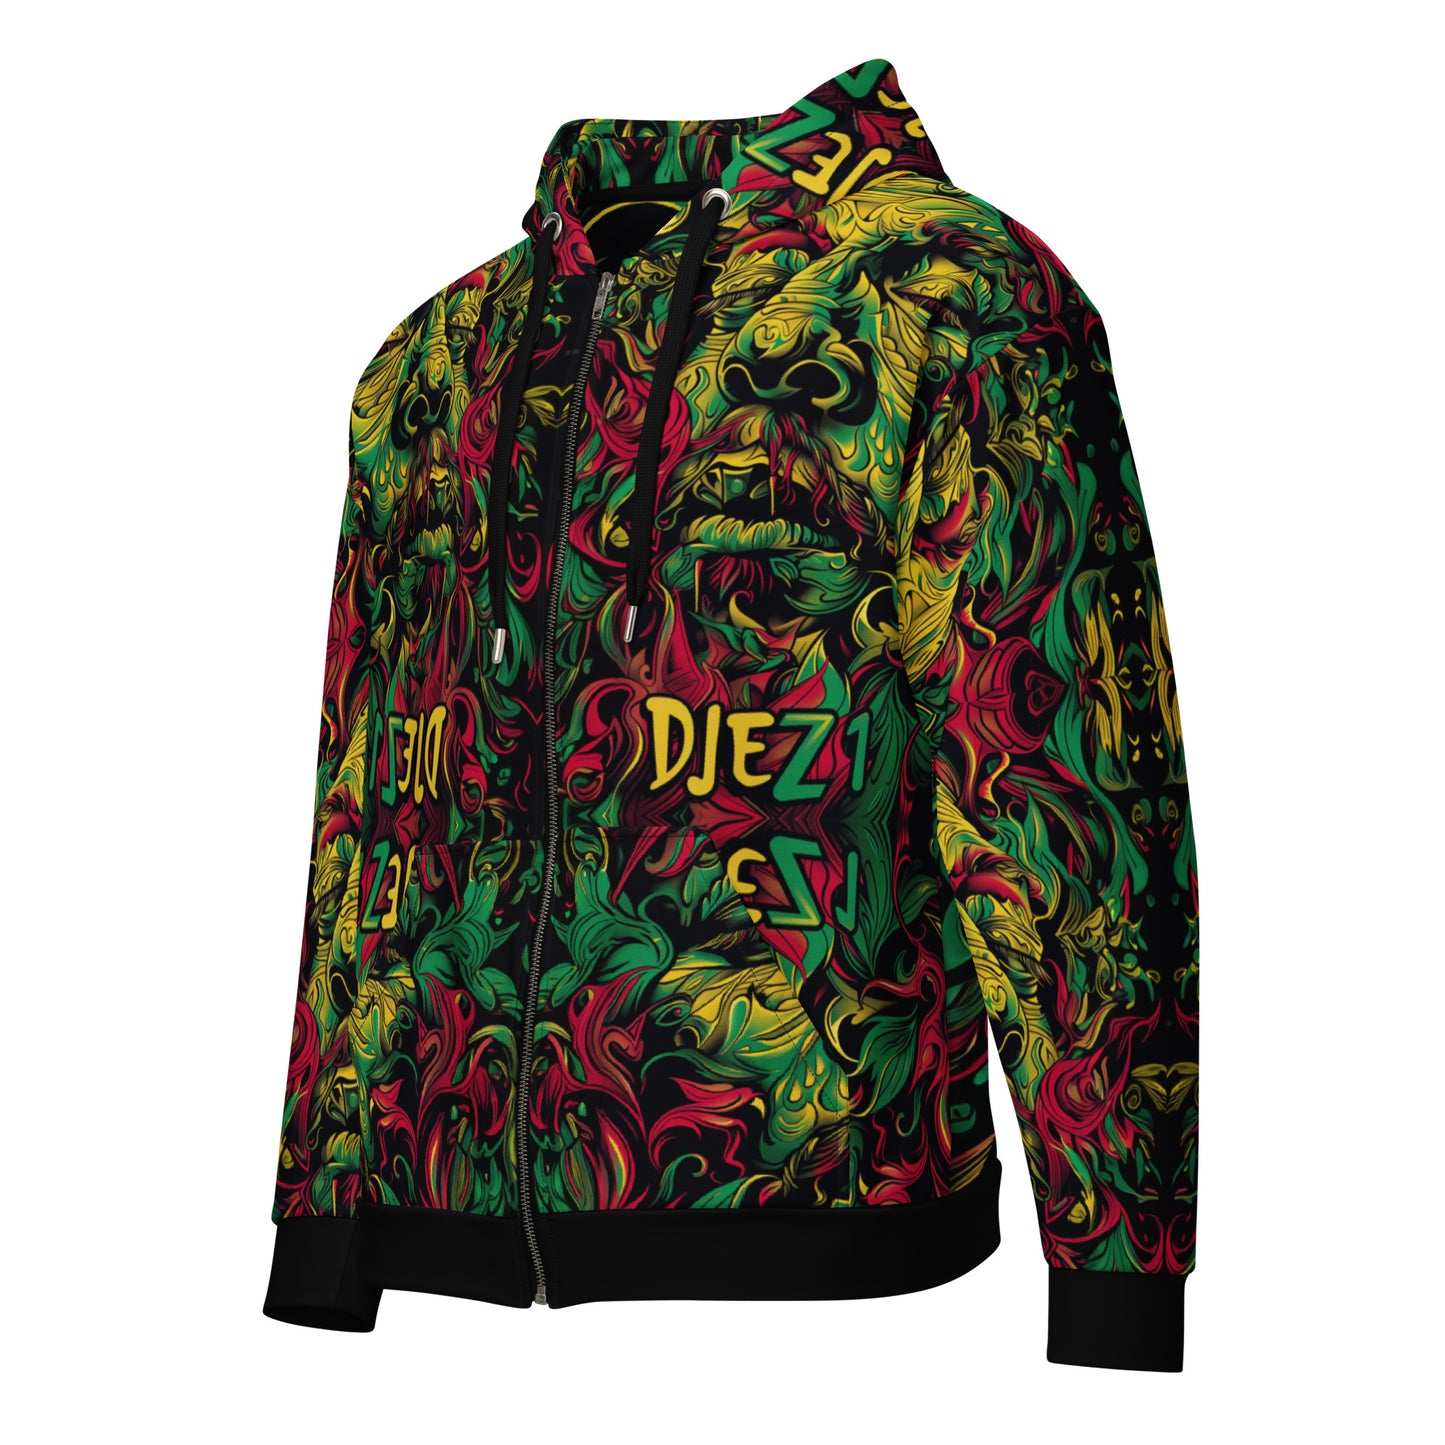 DJEZ1 -  zip hoodie